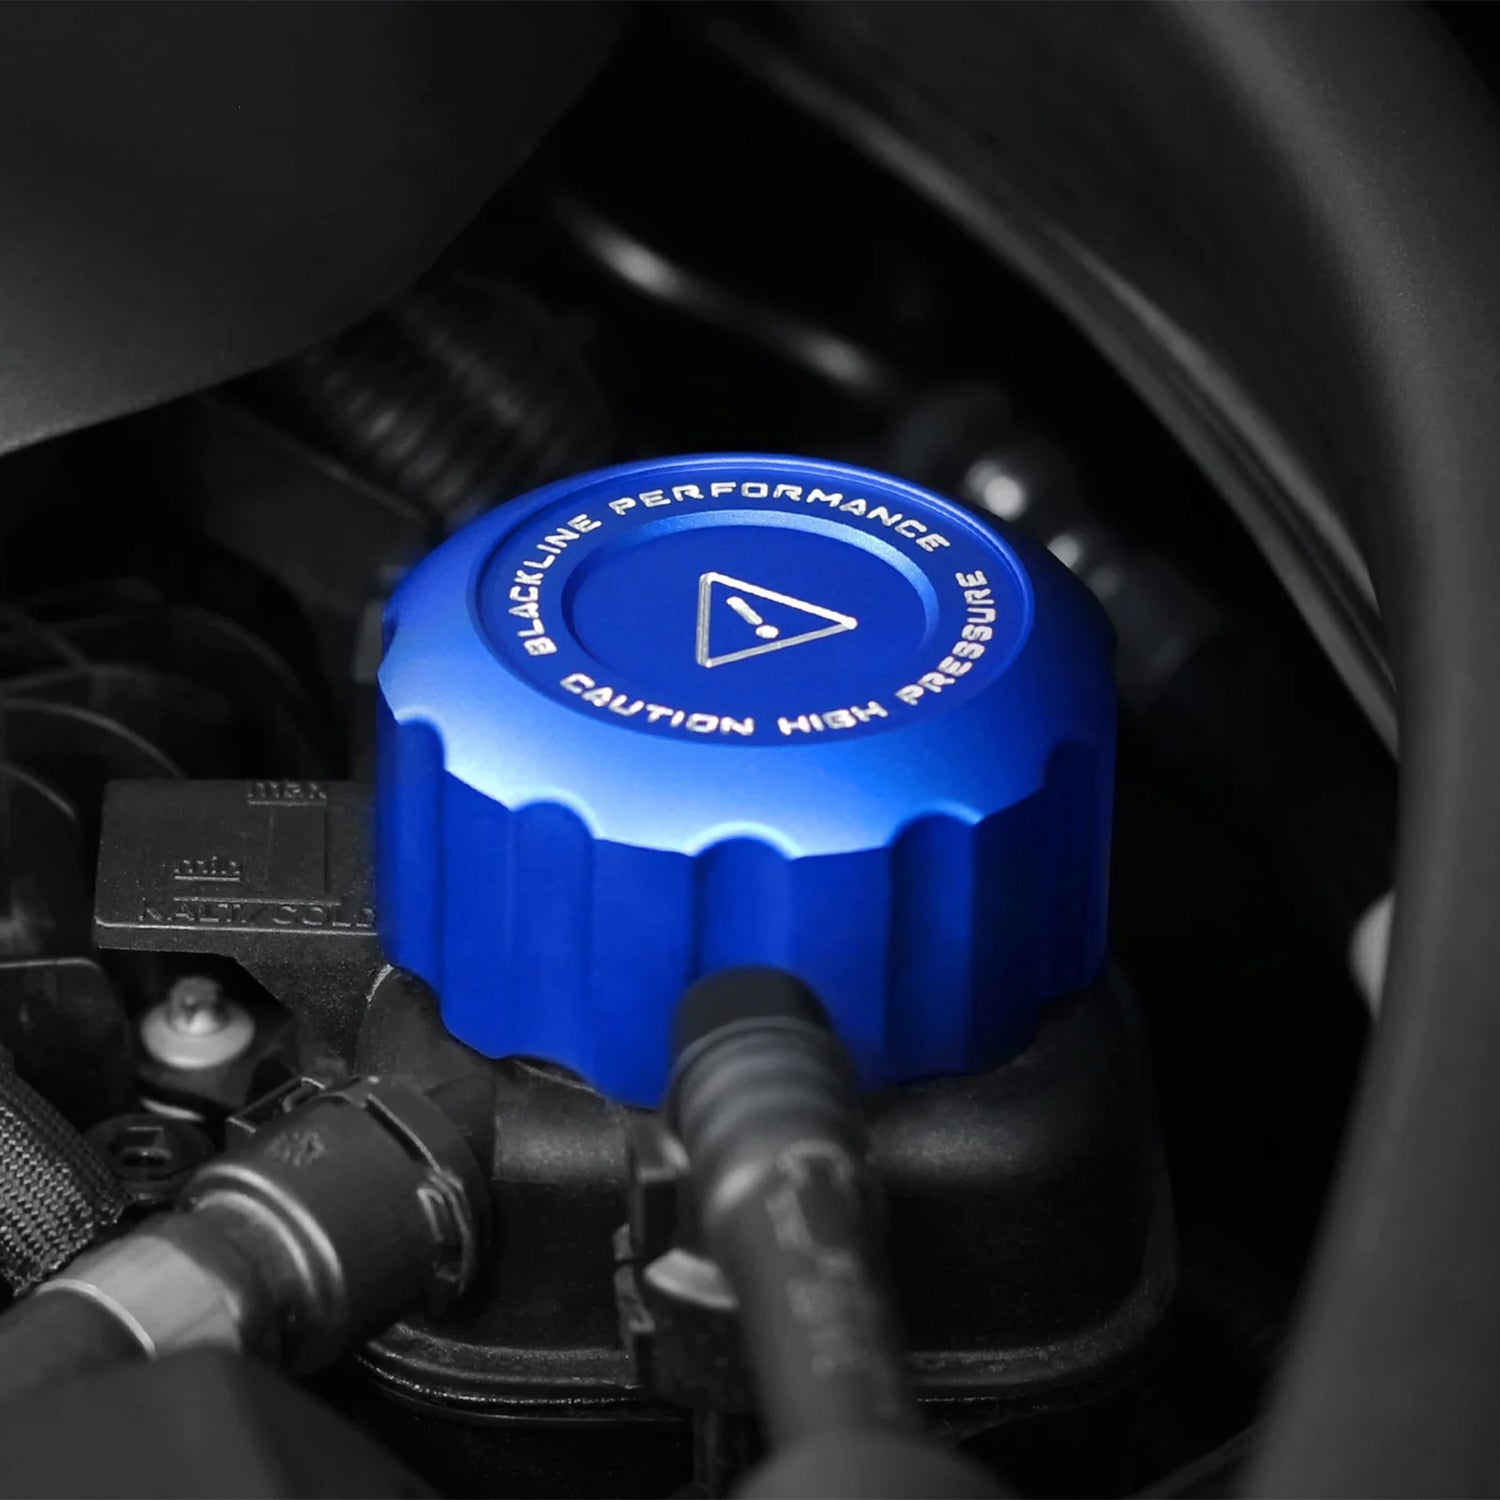 GoldenWrench BMW S58 BLACKLINE Performance Engine Cap Set In Blue